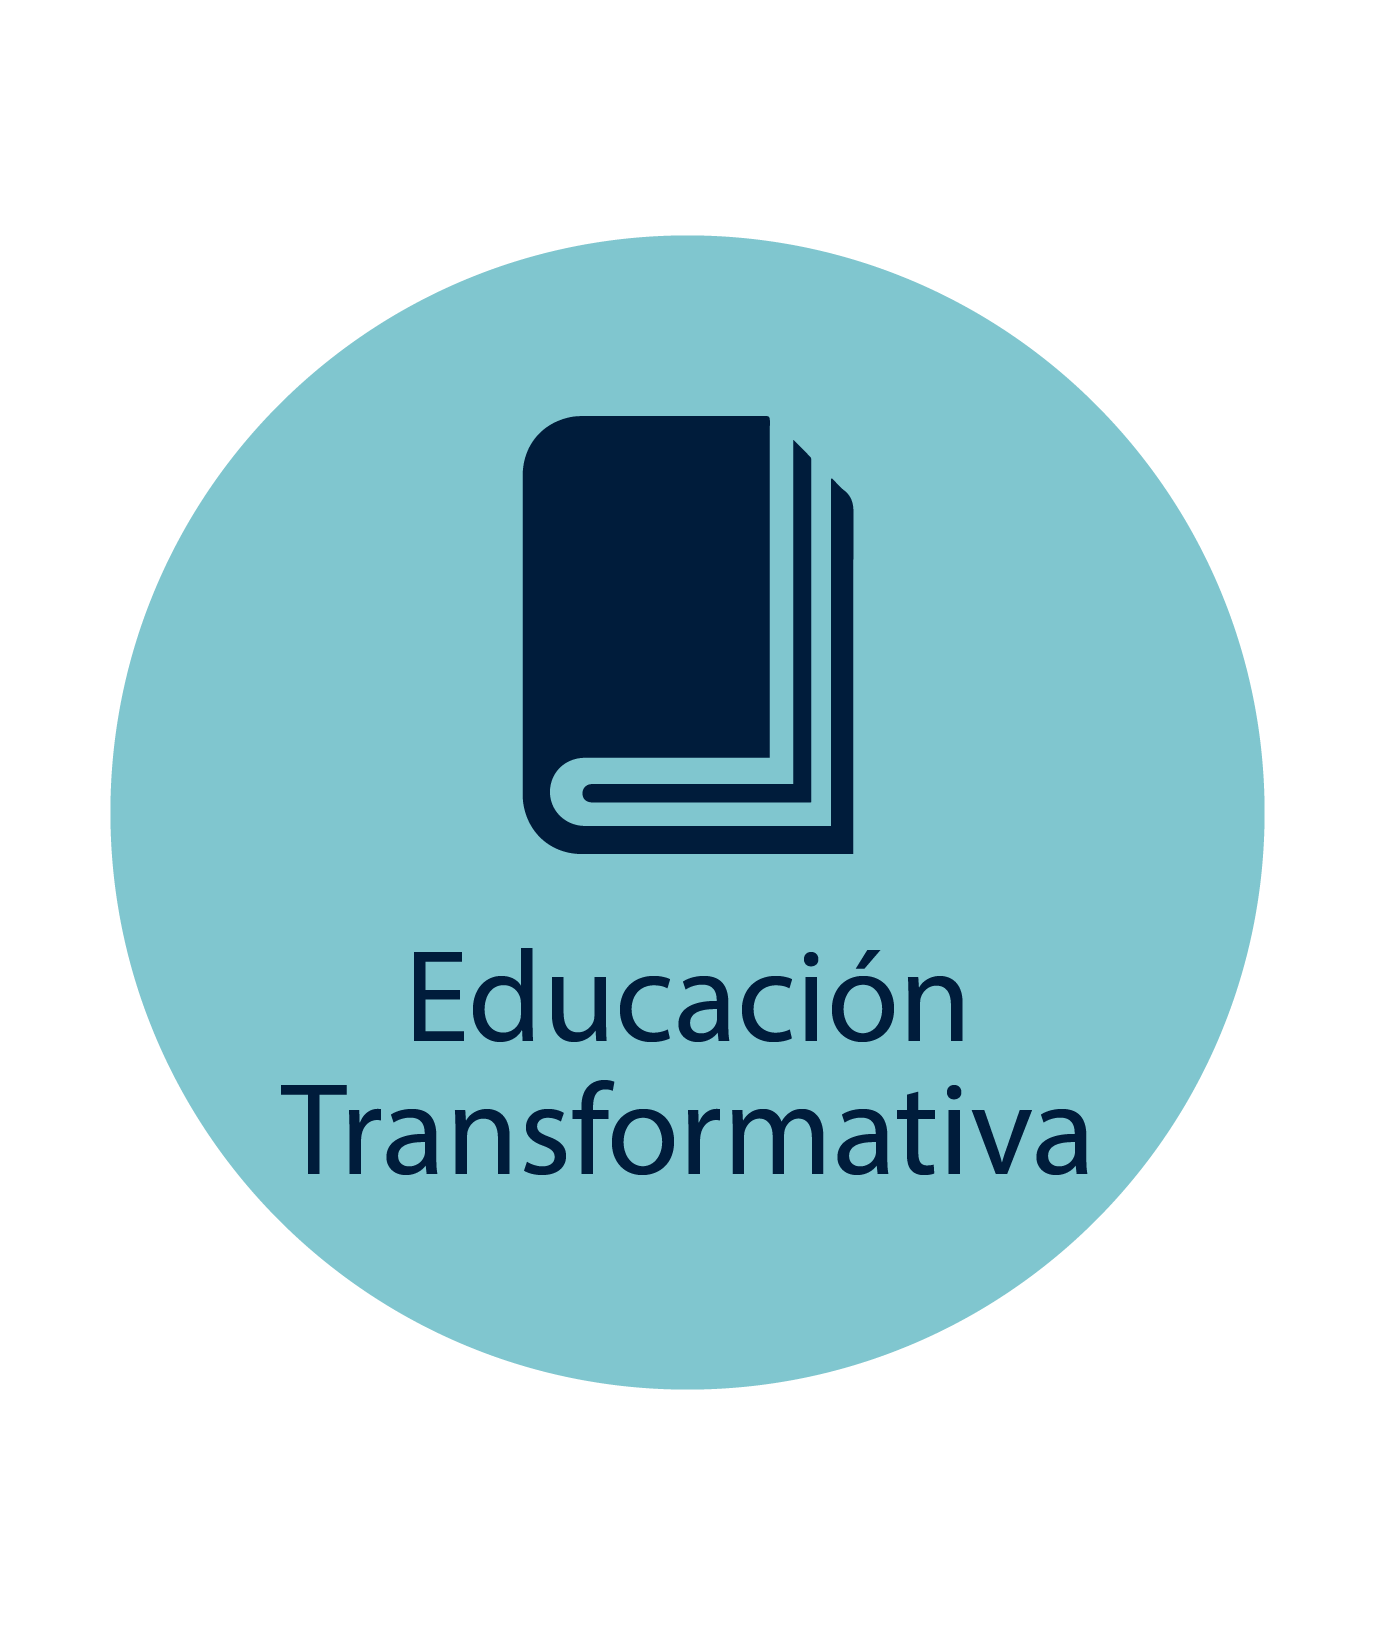 - Icono de educación transformativa de color azul con libro